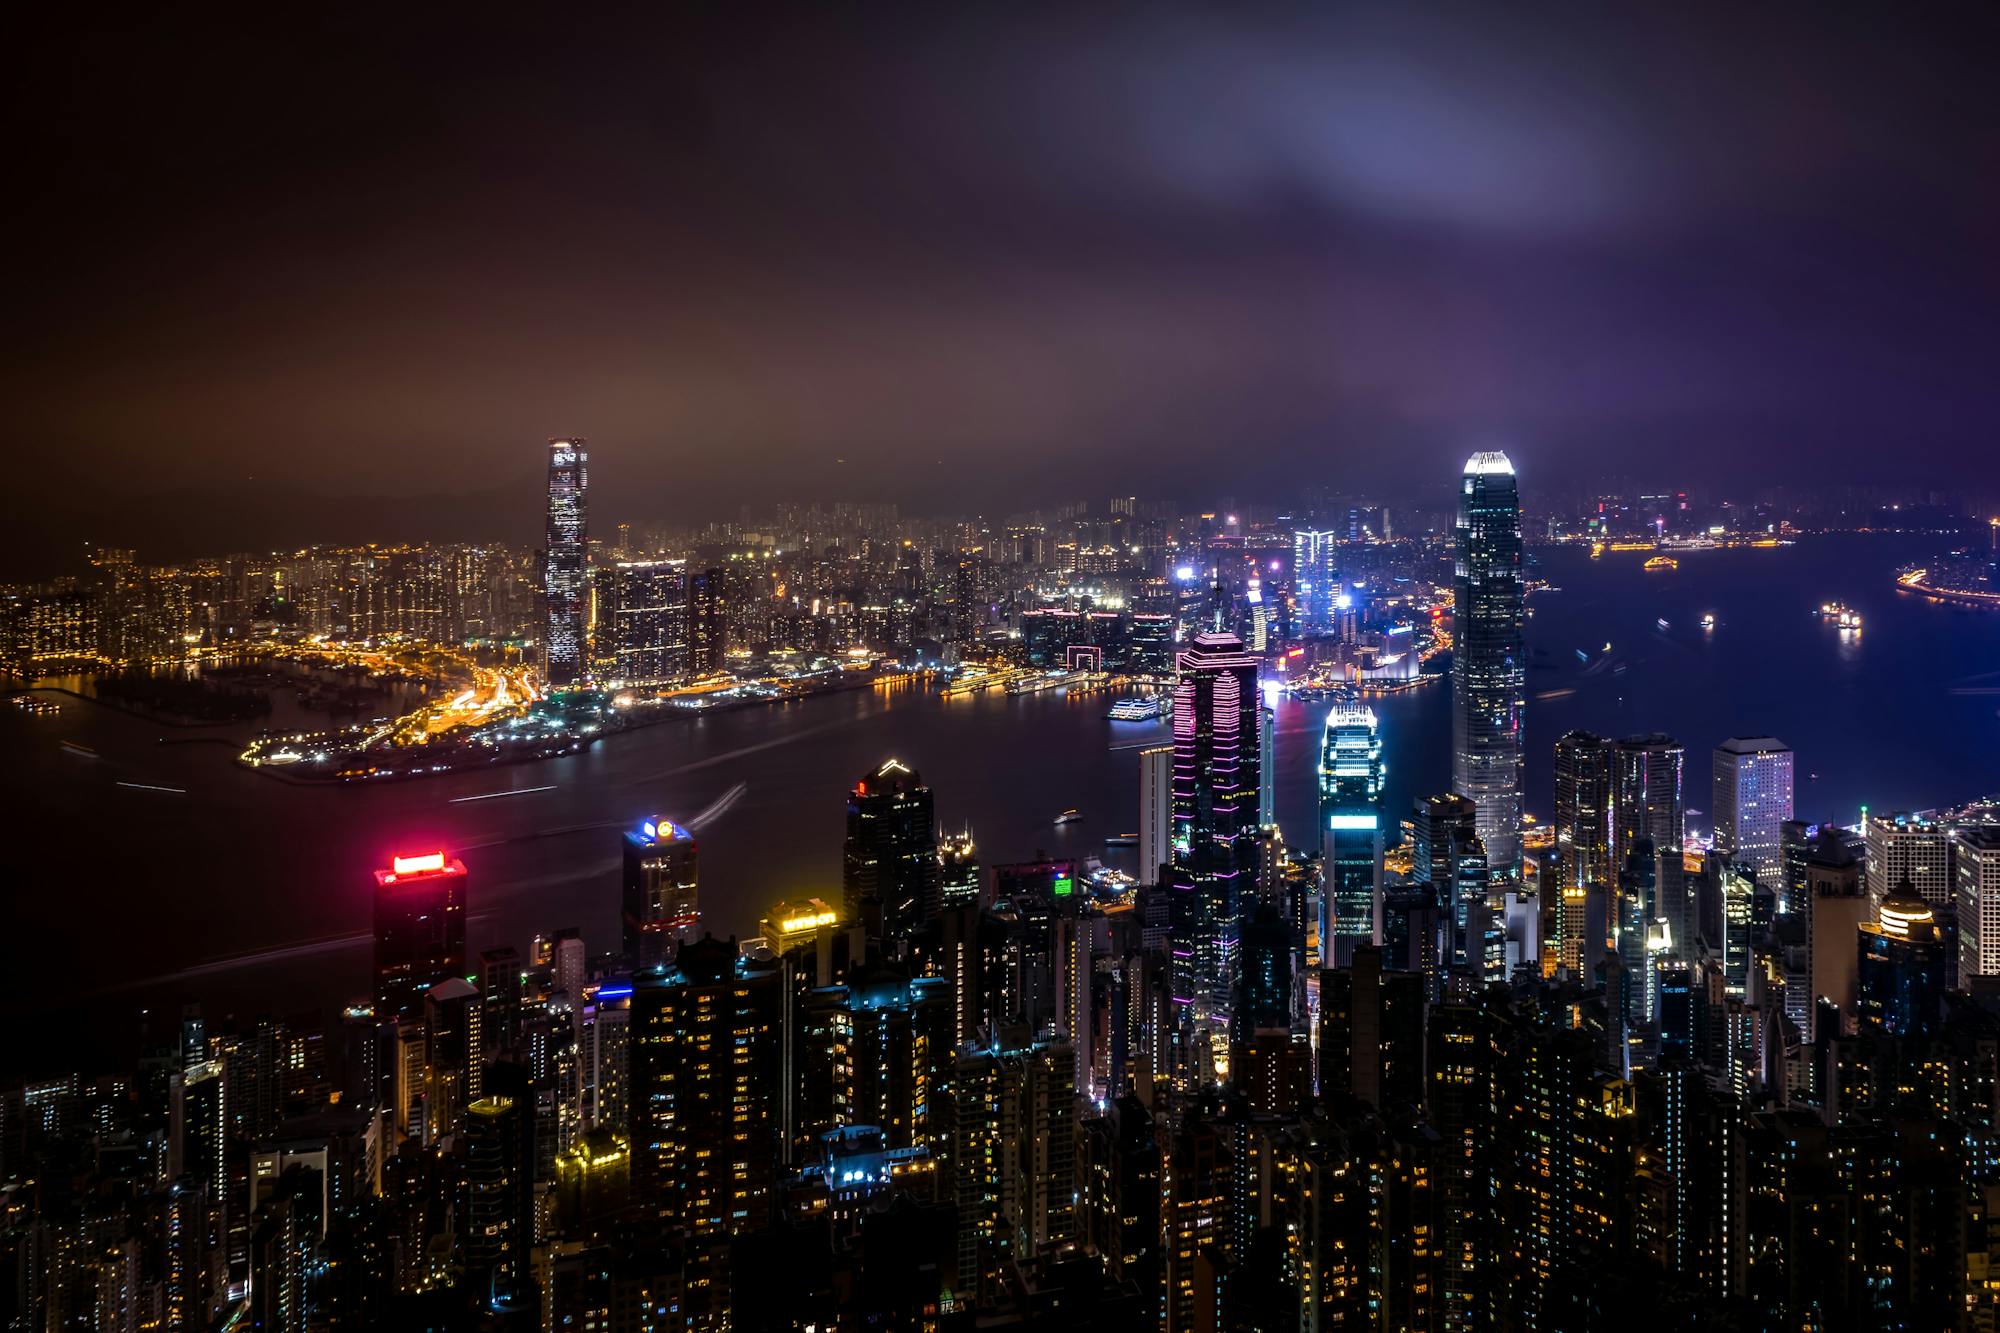 Widok na Hongkong nocą: Morze świateł bije od drapaczy chmur.